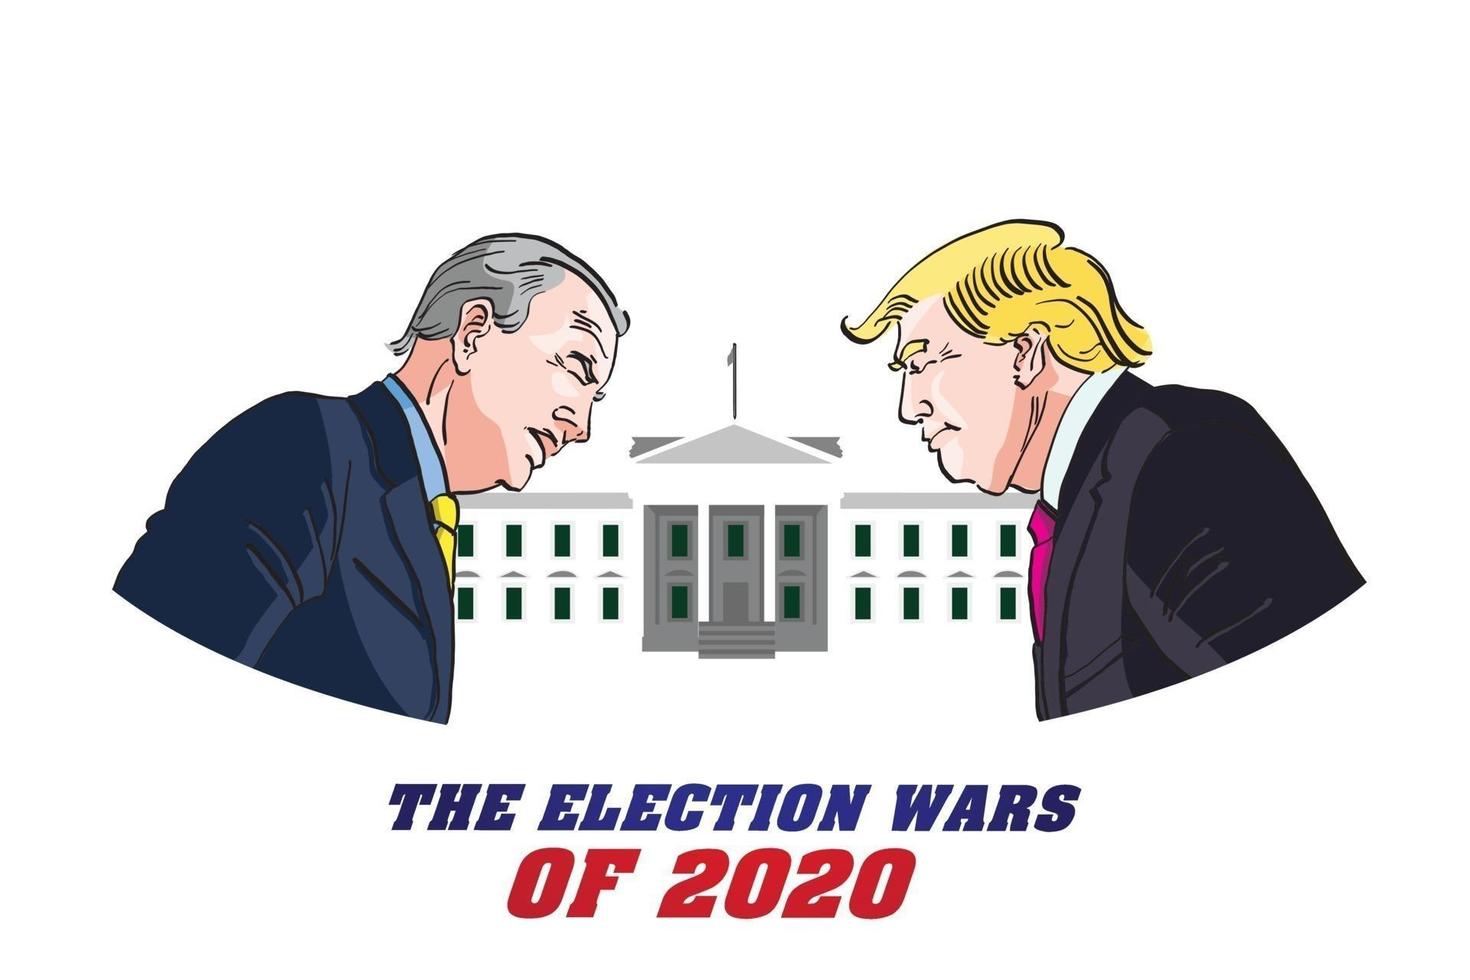 donald trump versus joe biden, candidatos presidenciais para as eleições americanas de 2020 ilustração vetorial. vetor